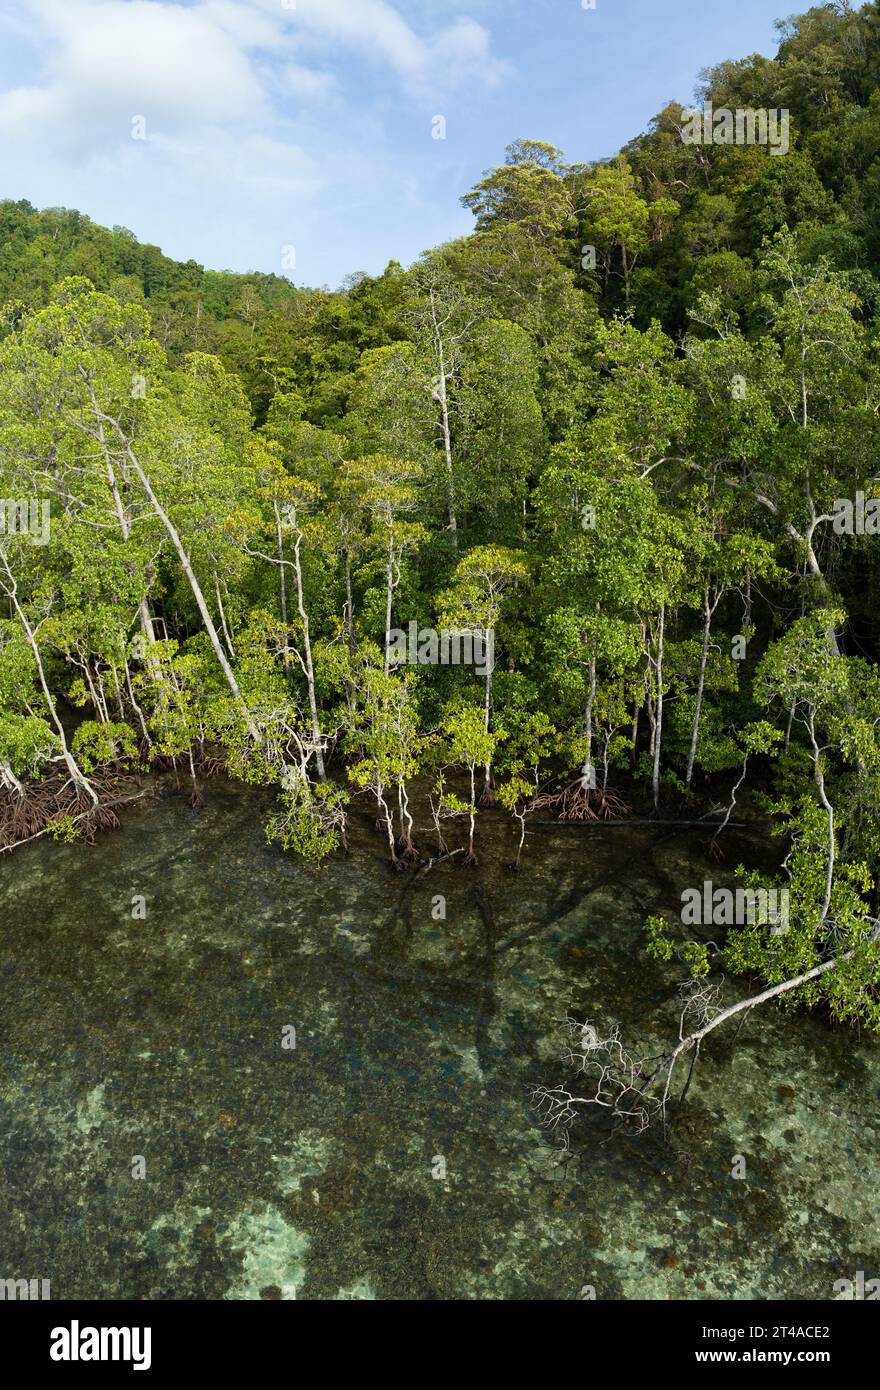 Una foresta di mangrovie cresce sul bordo di un'isola calcarea a Raja Ampat, Indonesia. Le mangrovie sostengono l'elevata biodiversità marina presente nell'area. Foto Stock